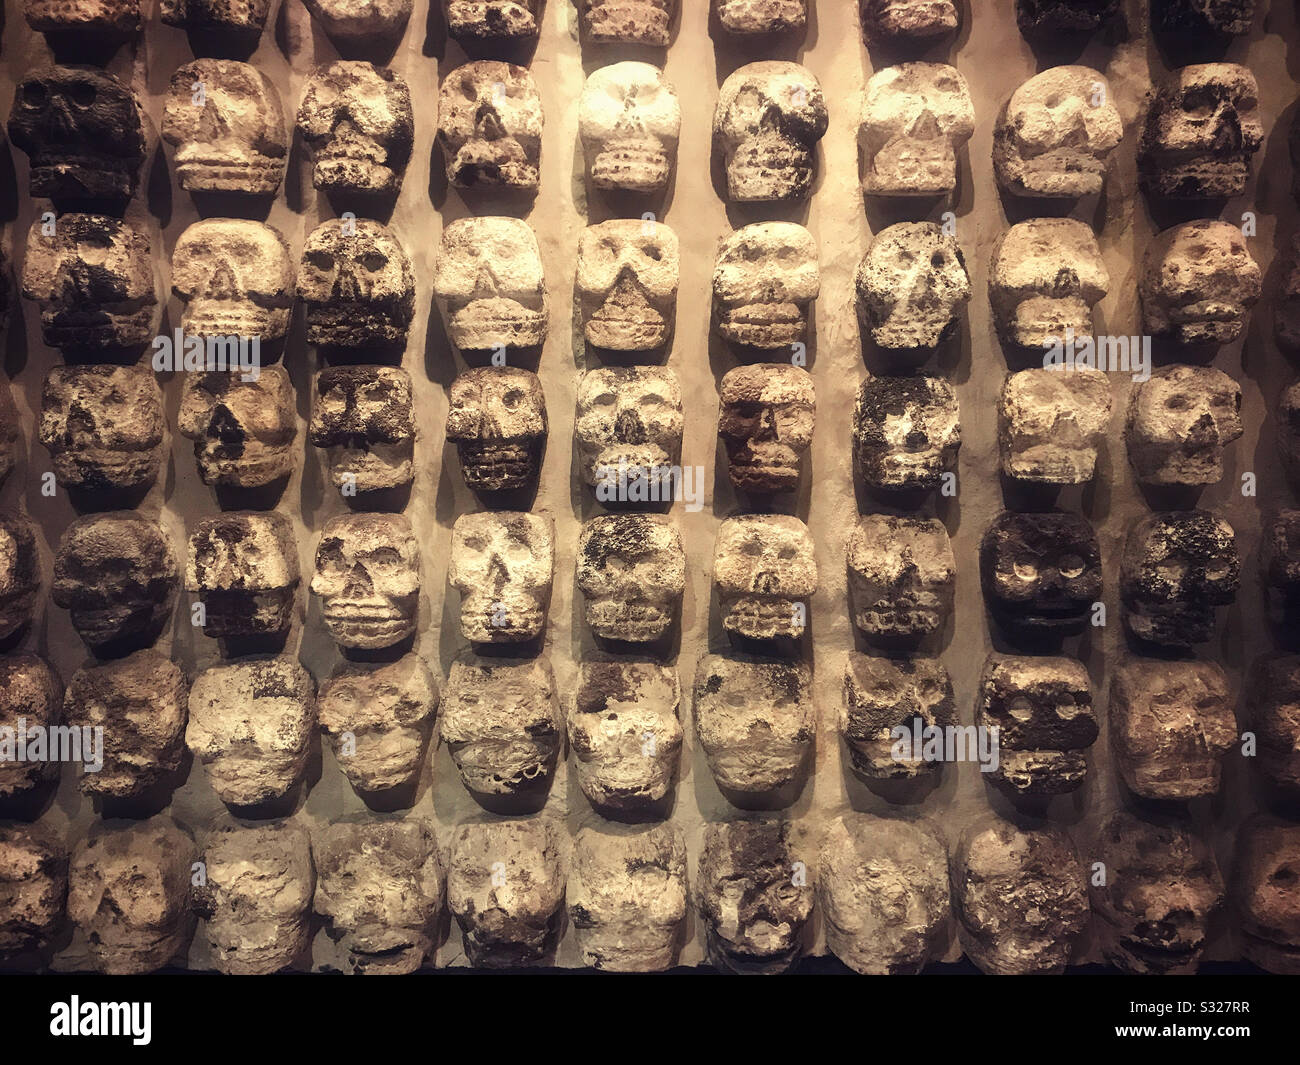 Les crânes, représentant un sacrifice humain, sont exposés dans le musée Templo Mayor de Mexico, au Mexique Banque D'Images